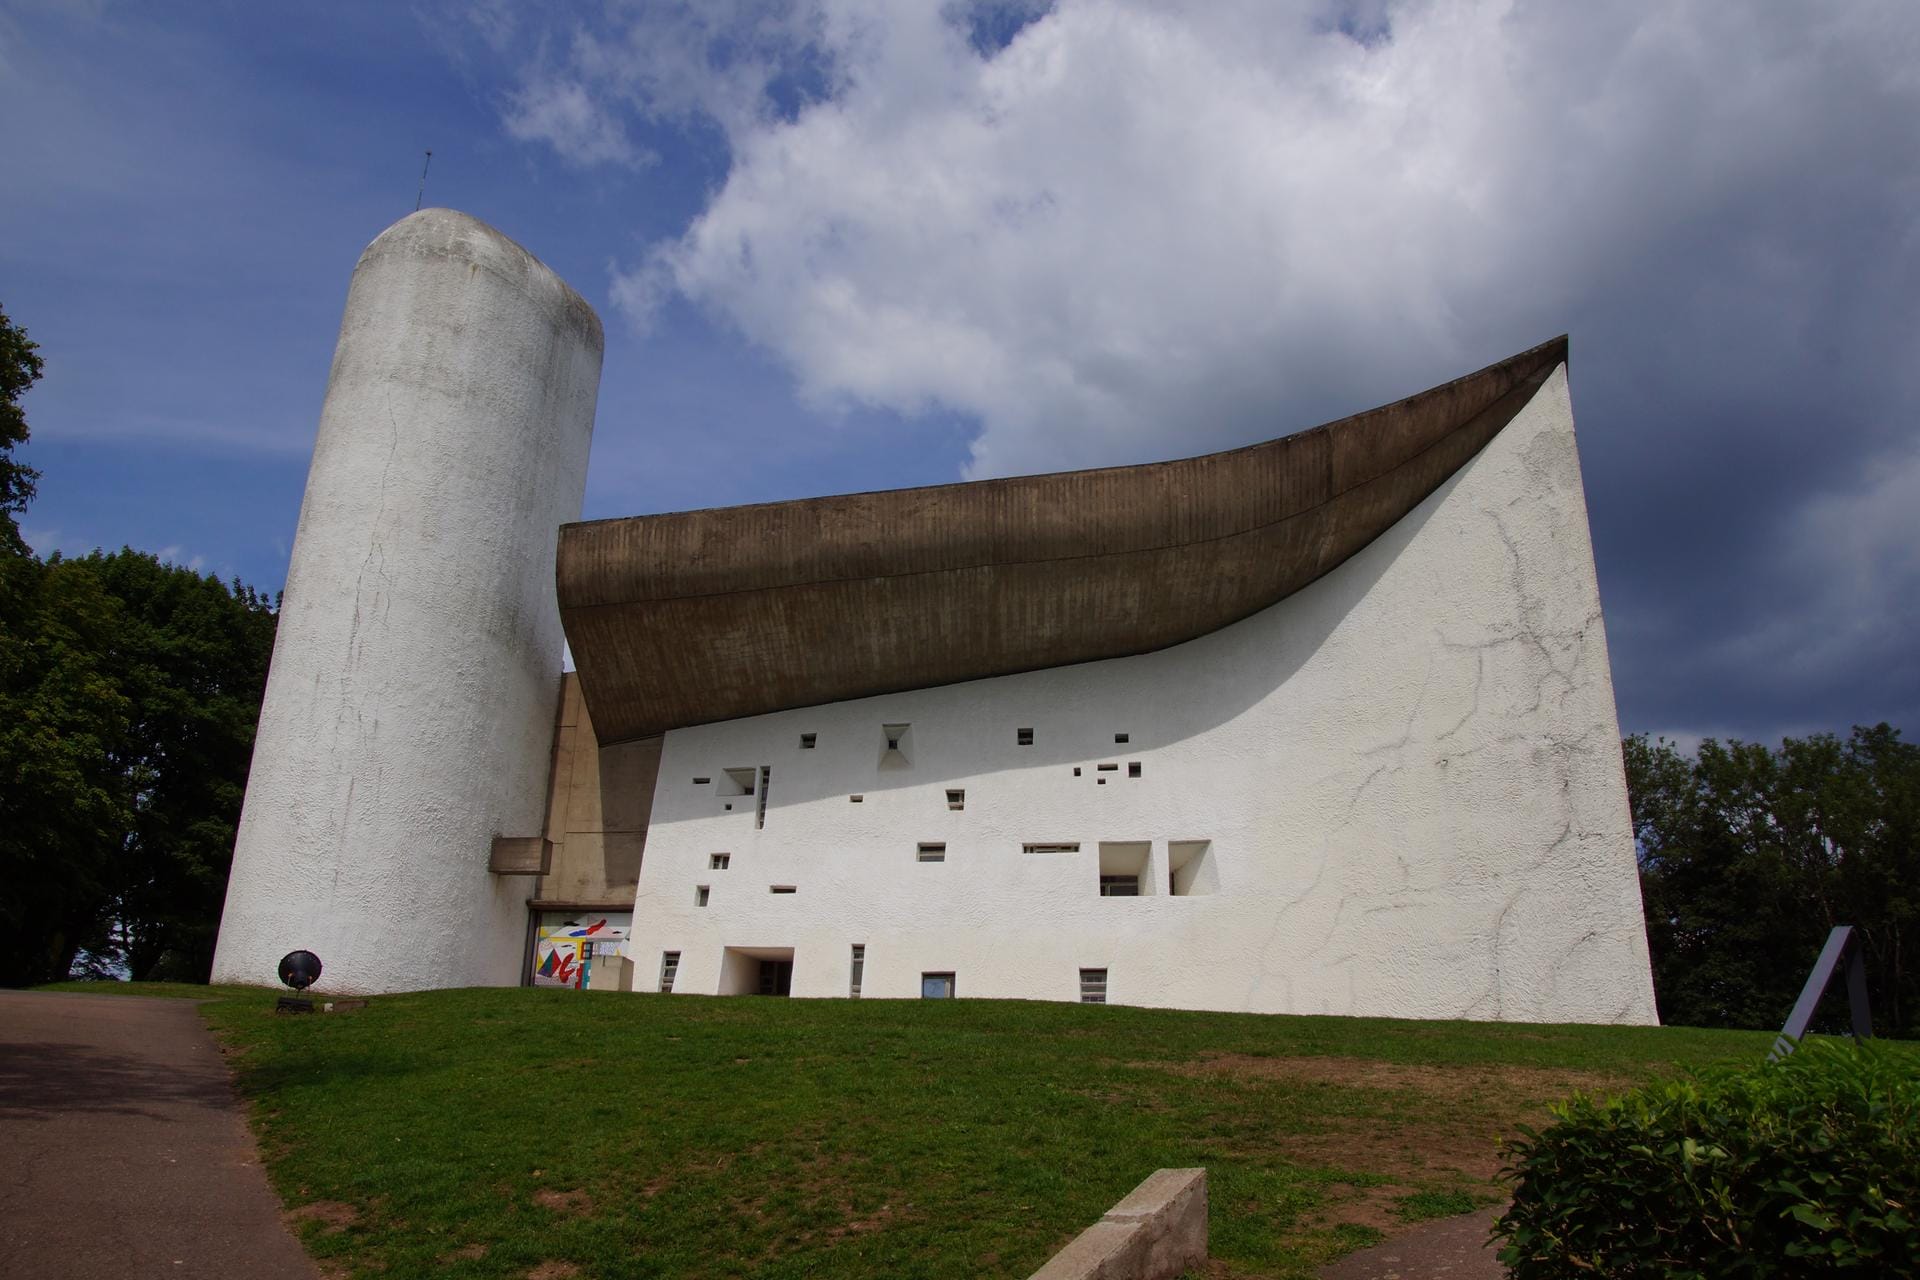 Die Sammelbewerbung bekam den Welterbestatus für die Werke des Architekten Le Corbusier, der auch die Kapelle von Ronchamp im Bild baute. Es war eine Gemeinschaftsbewerbung von Argentinien, Belgien, Deutschland, Frankreich, Indien, Japan und der Schweiz.